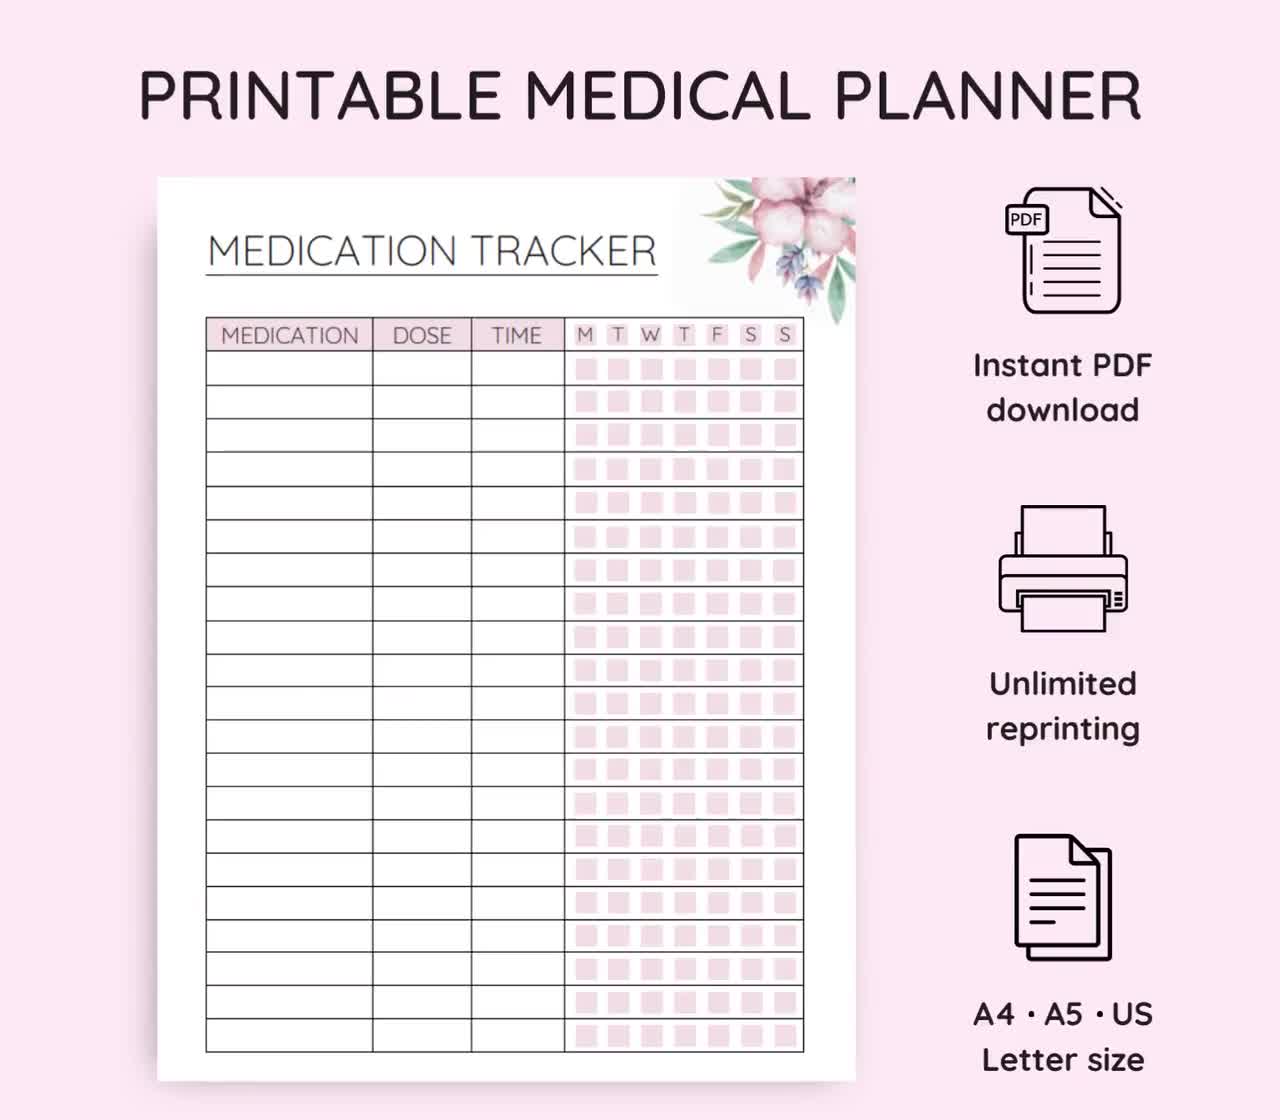 https://v.etsystatic.com/video/upload/q_auto/Printable_Medical_Planner_floral_pink_video_cdrzjw.jpg